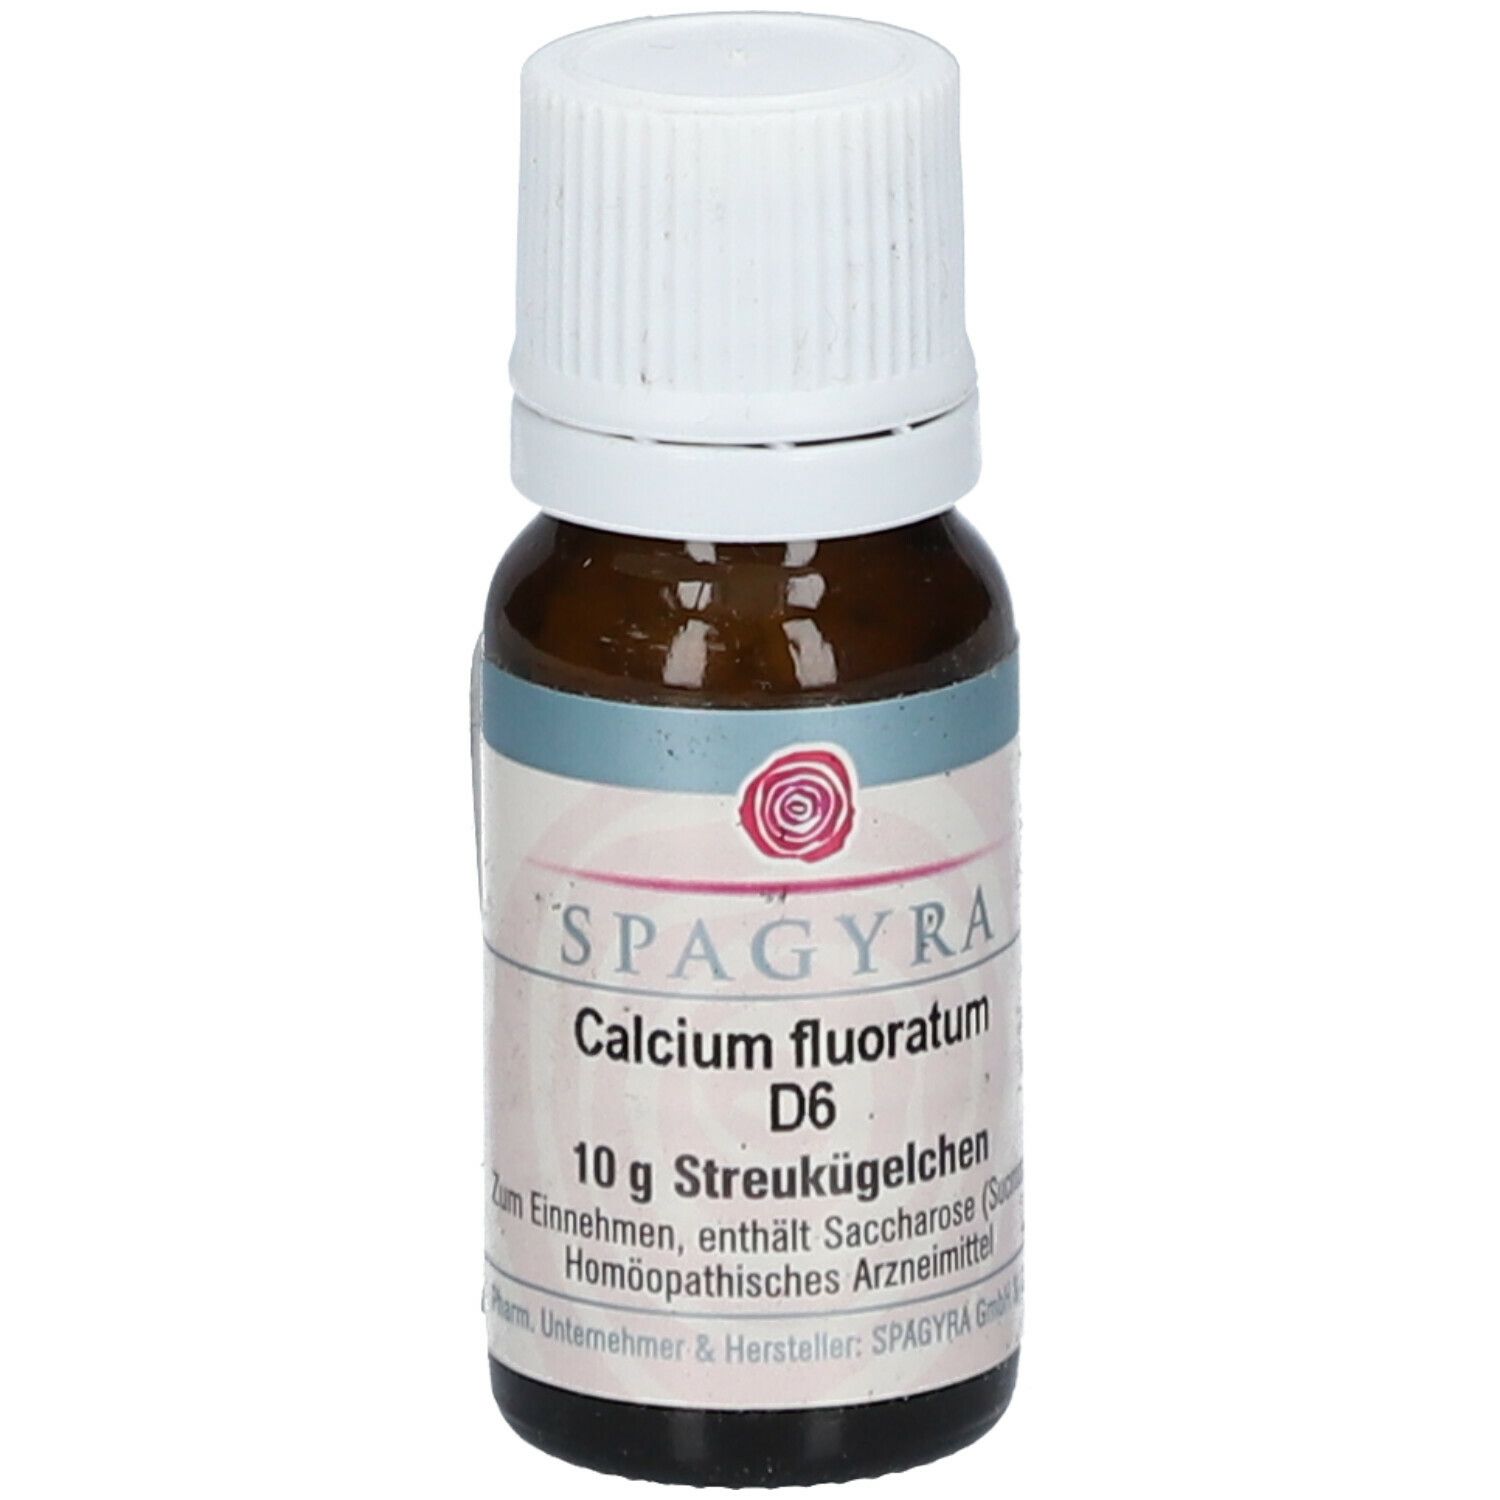 SPAGYRA Calcium Fluoratum D6